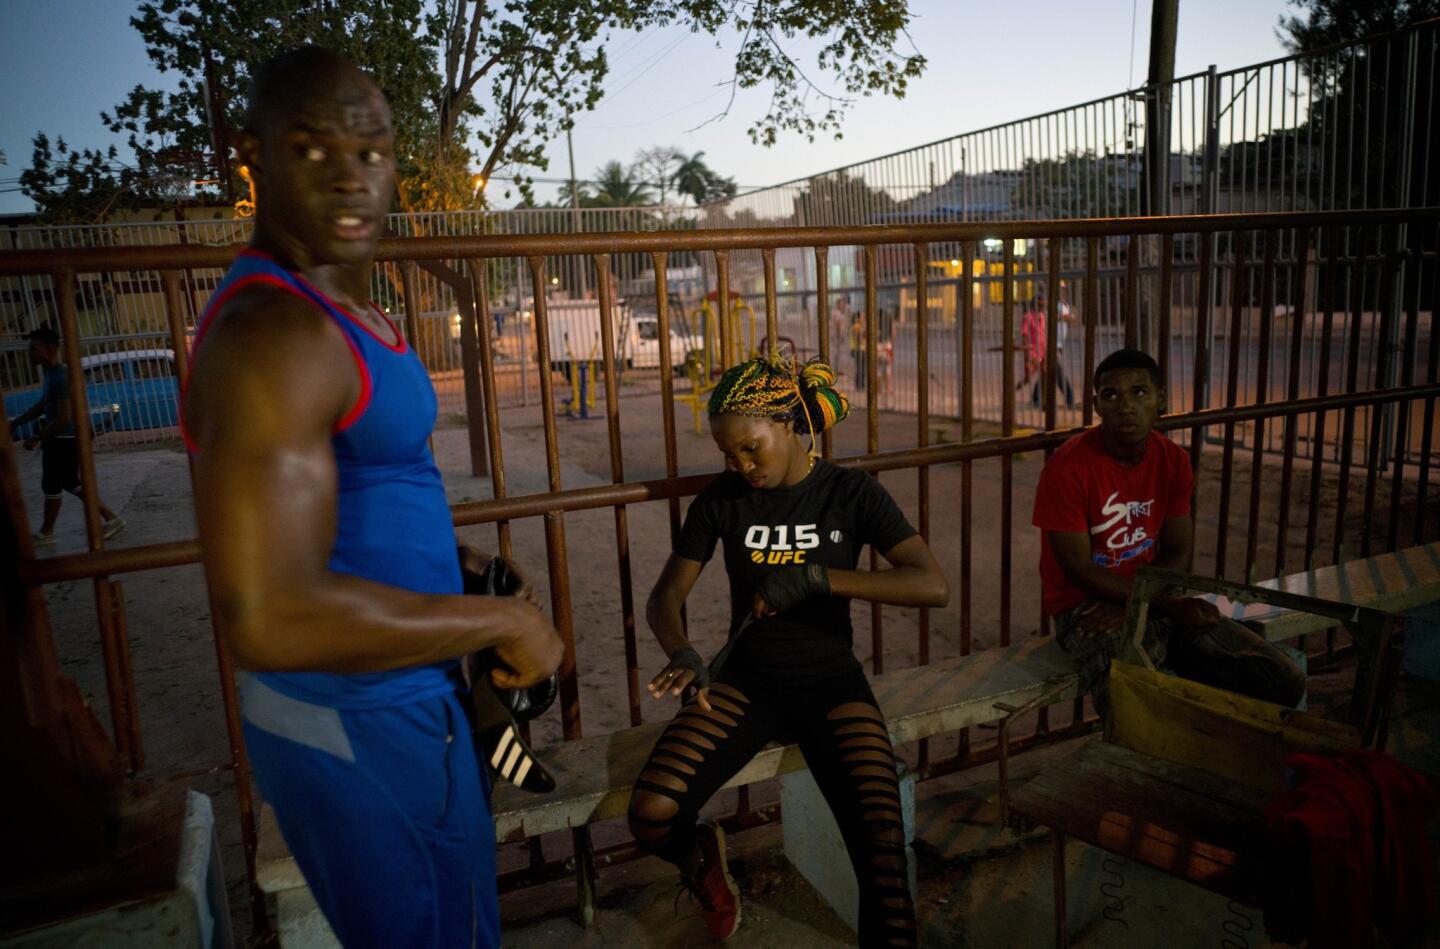 La lucha de mujeres boxeadoras en Cuba